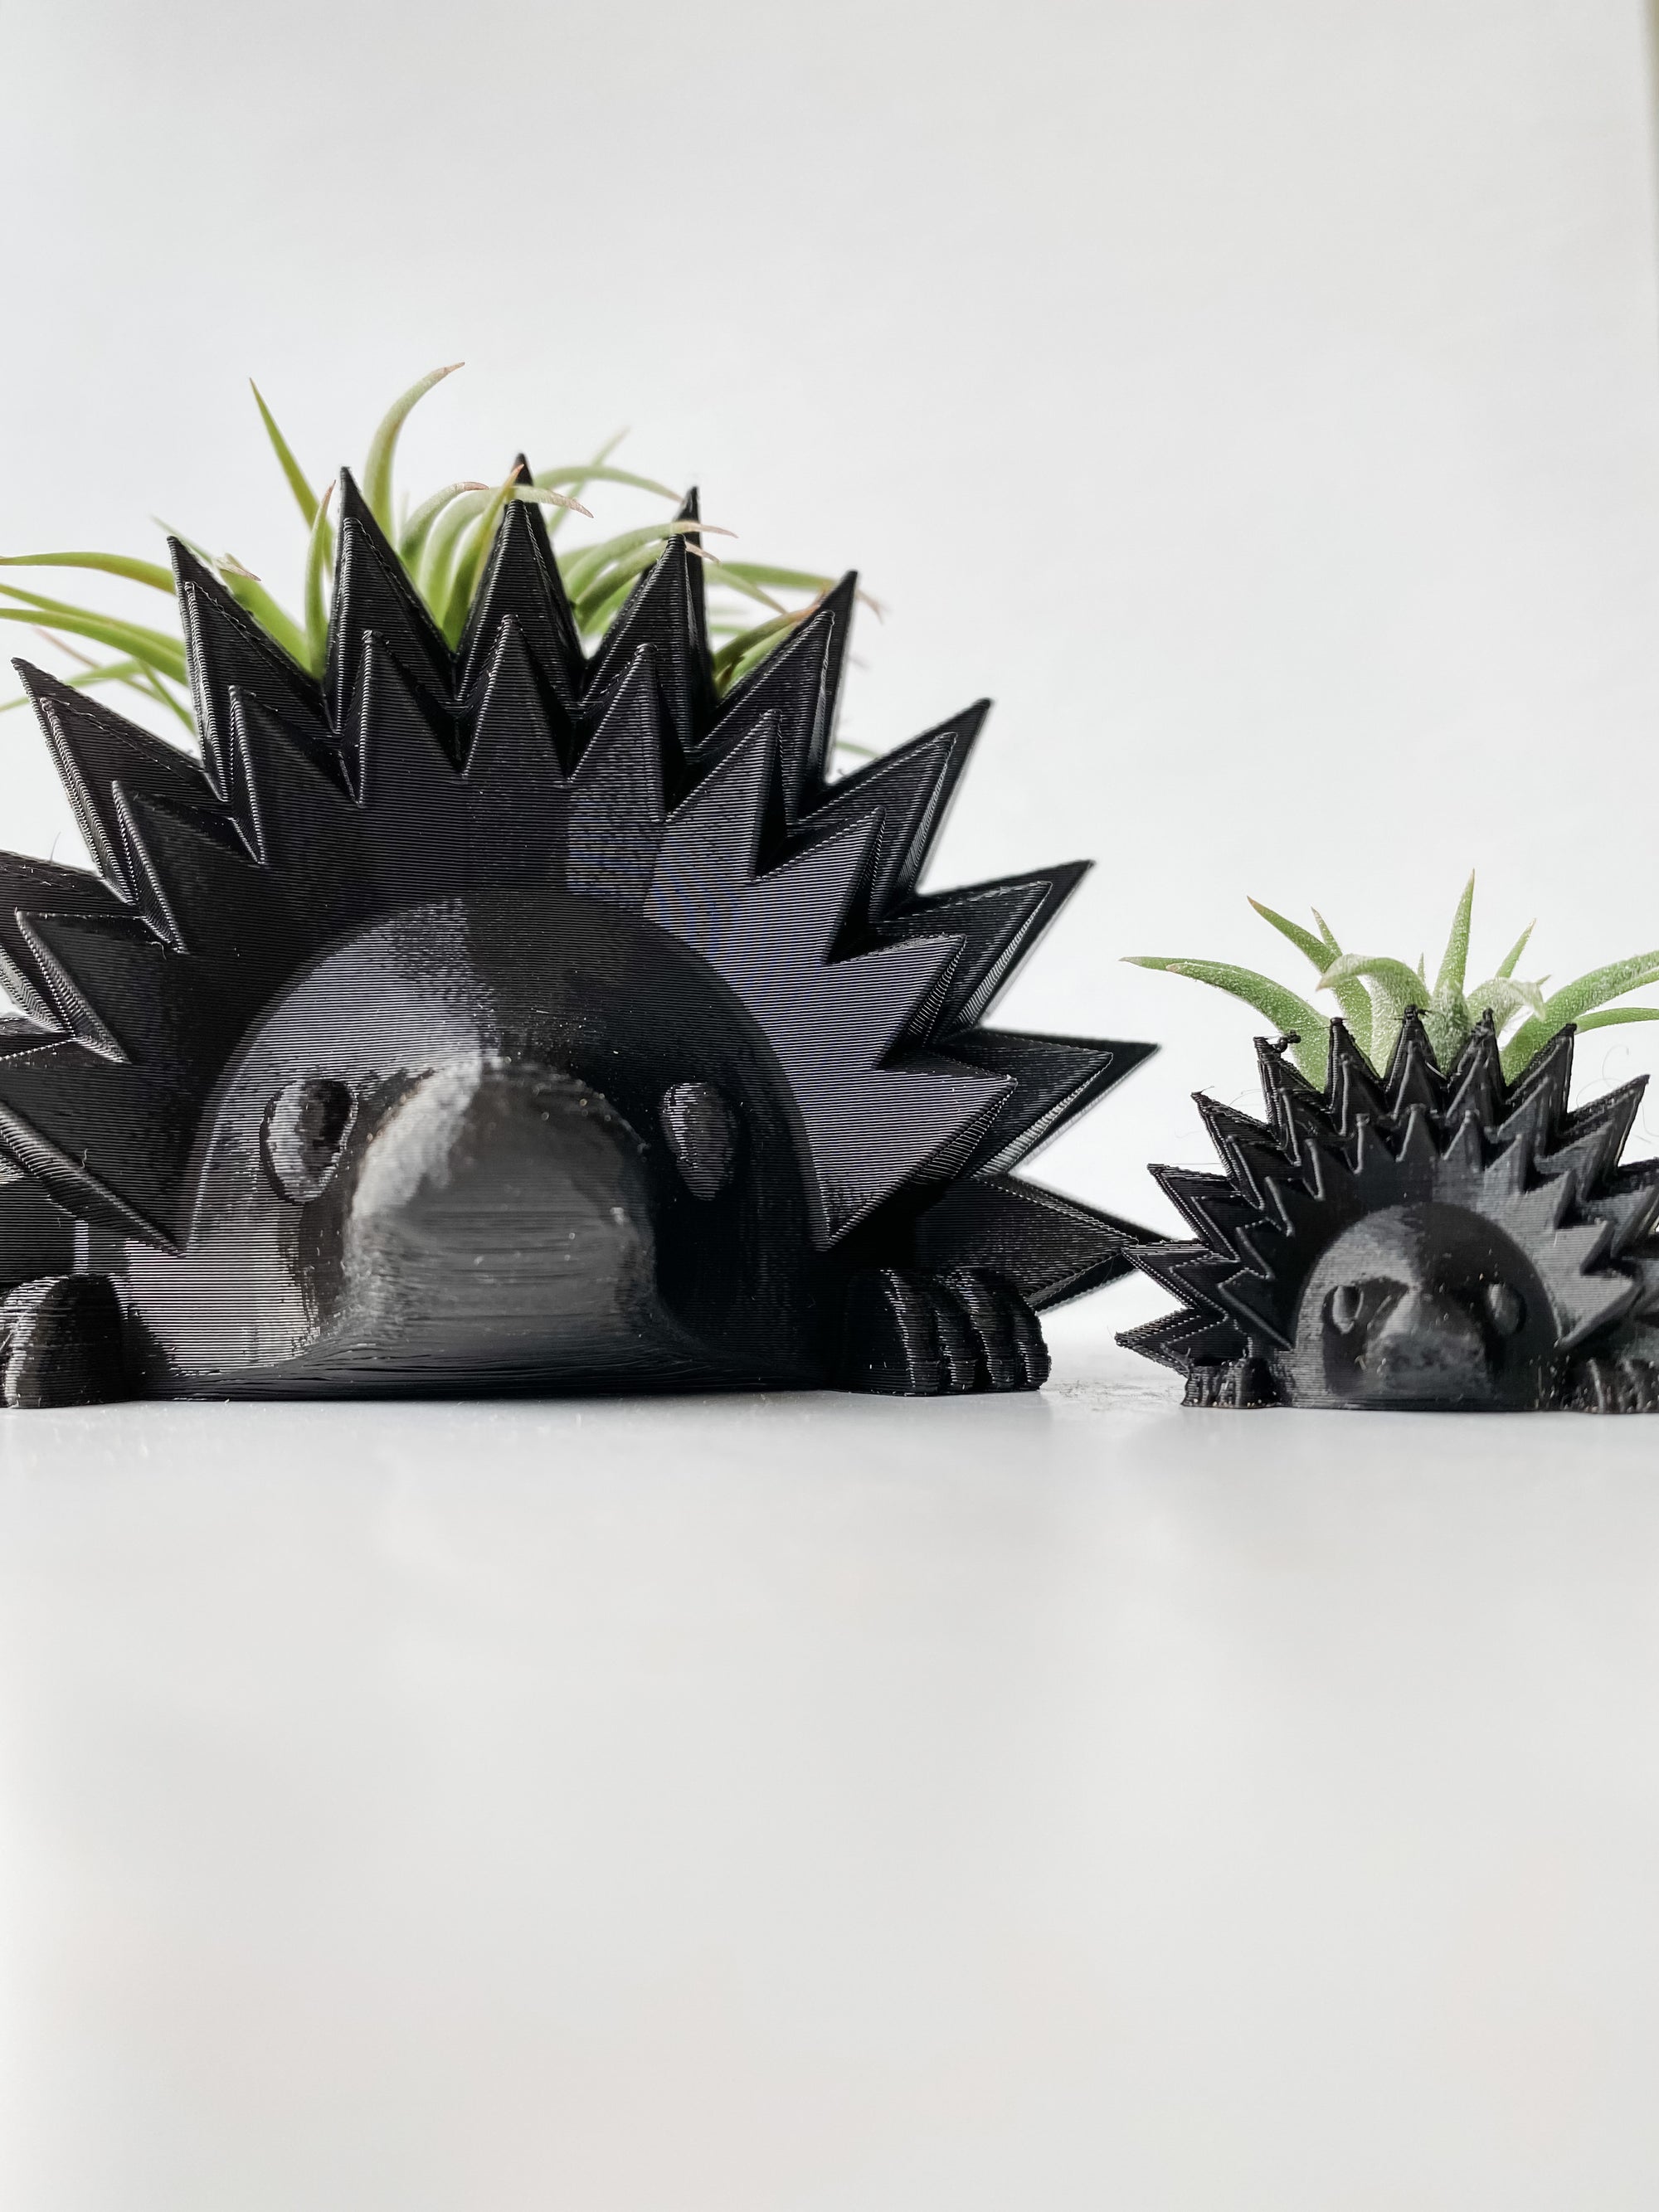 Hedgehog Planter + Air Plant